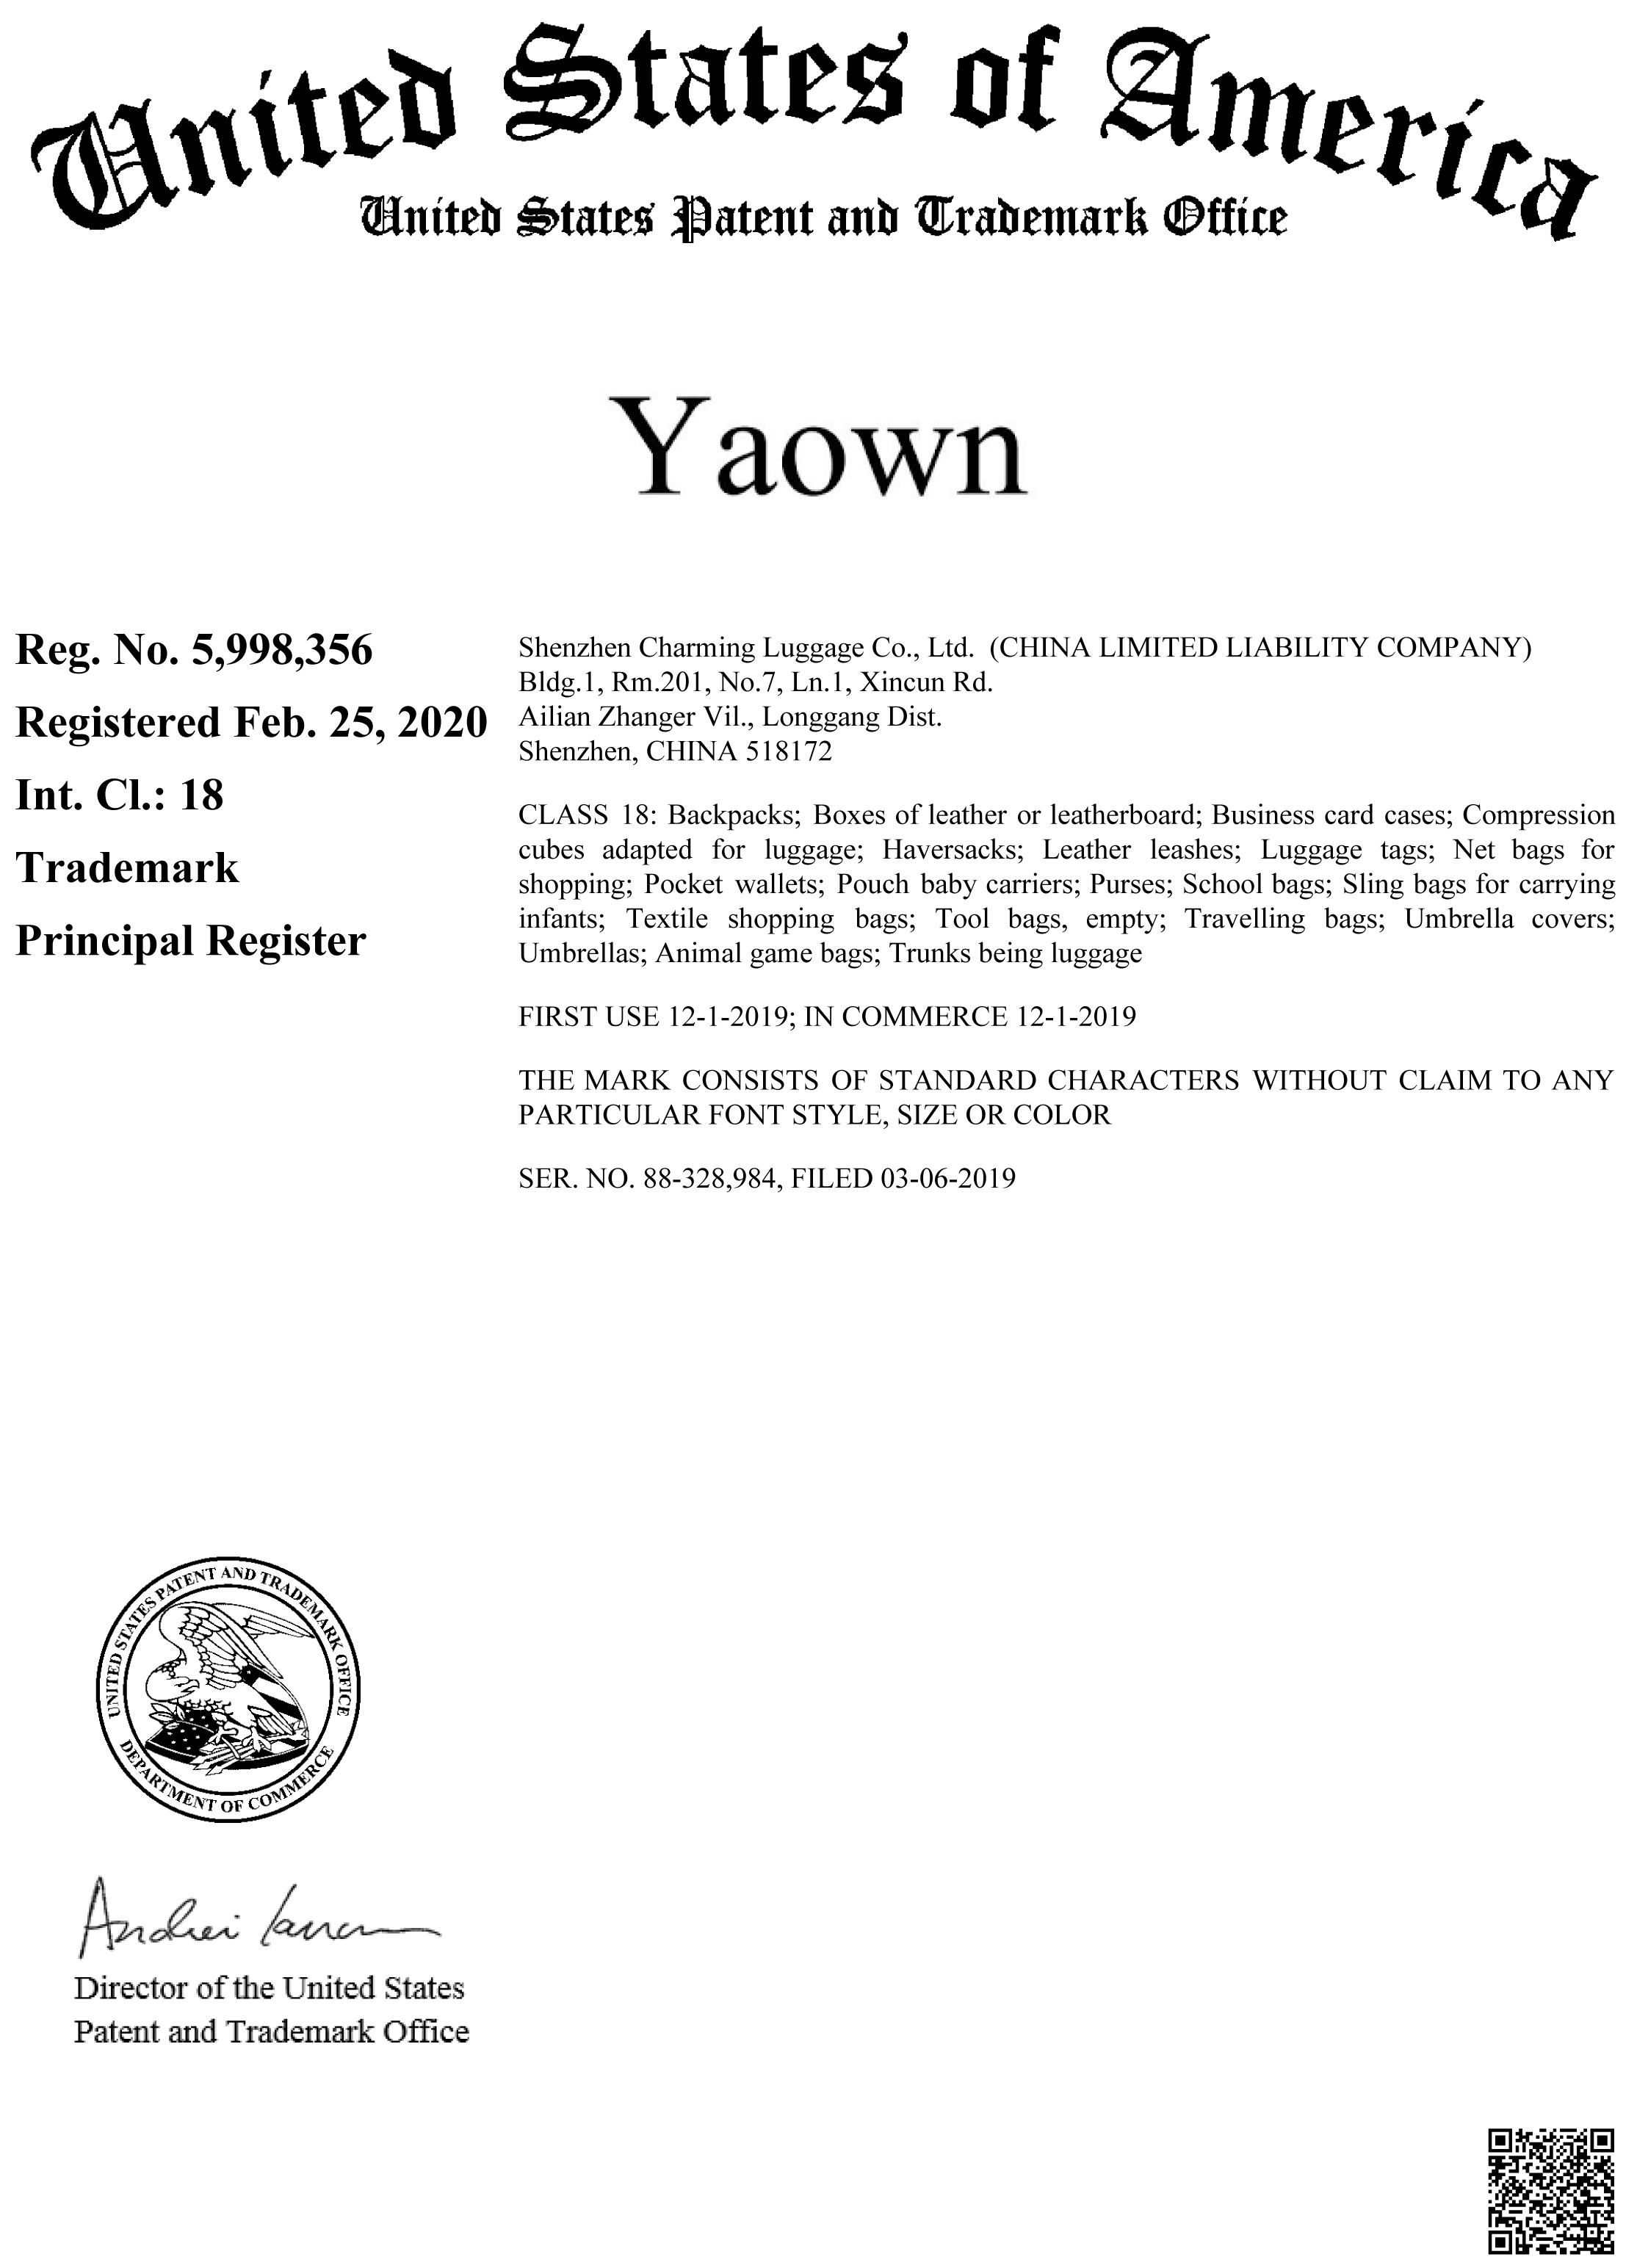 Yaown Trademark